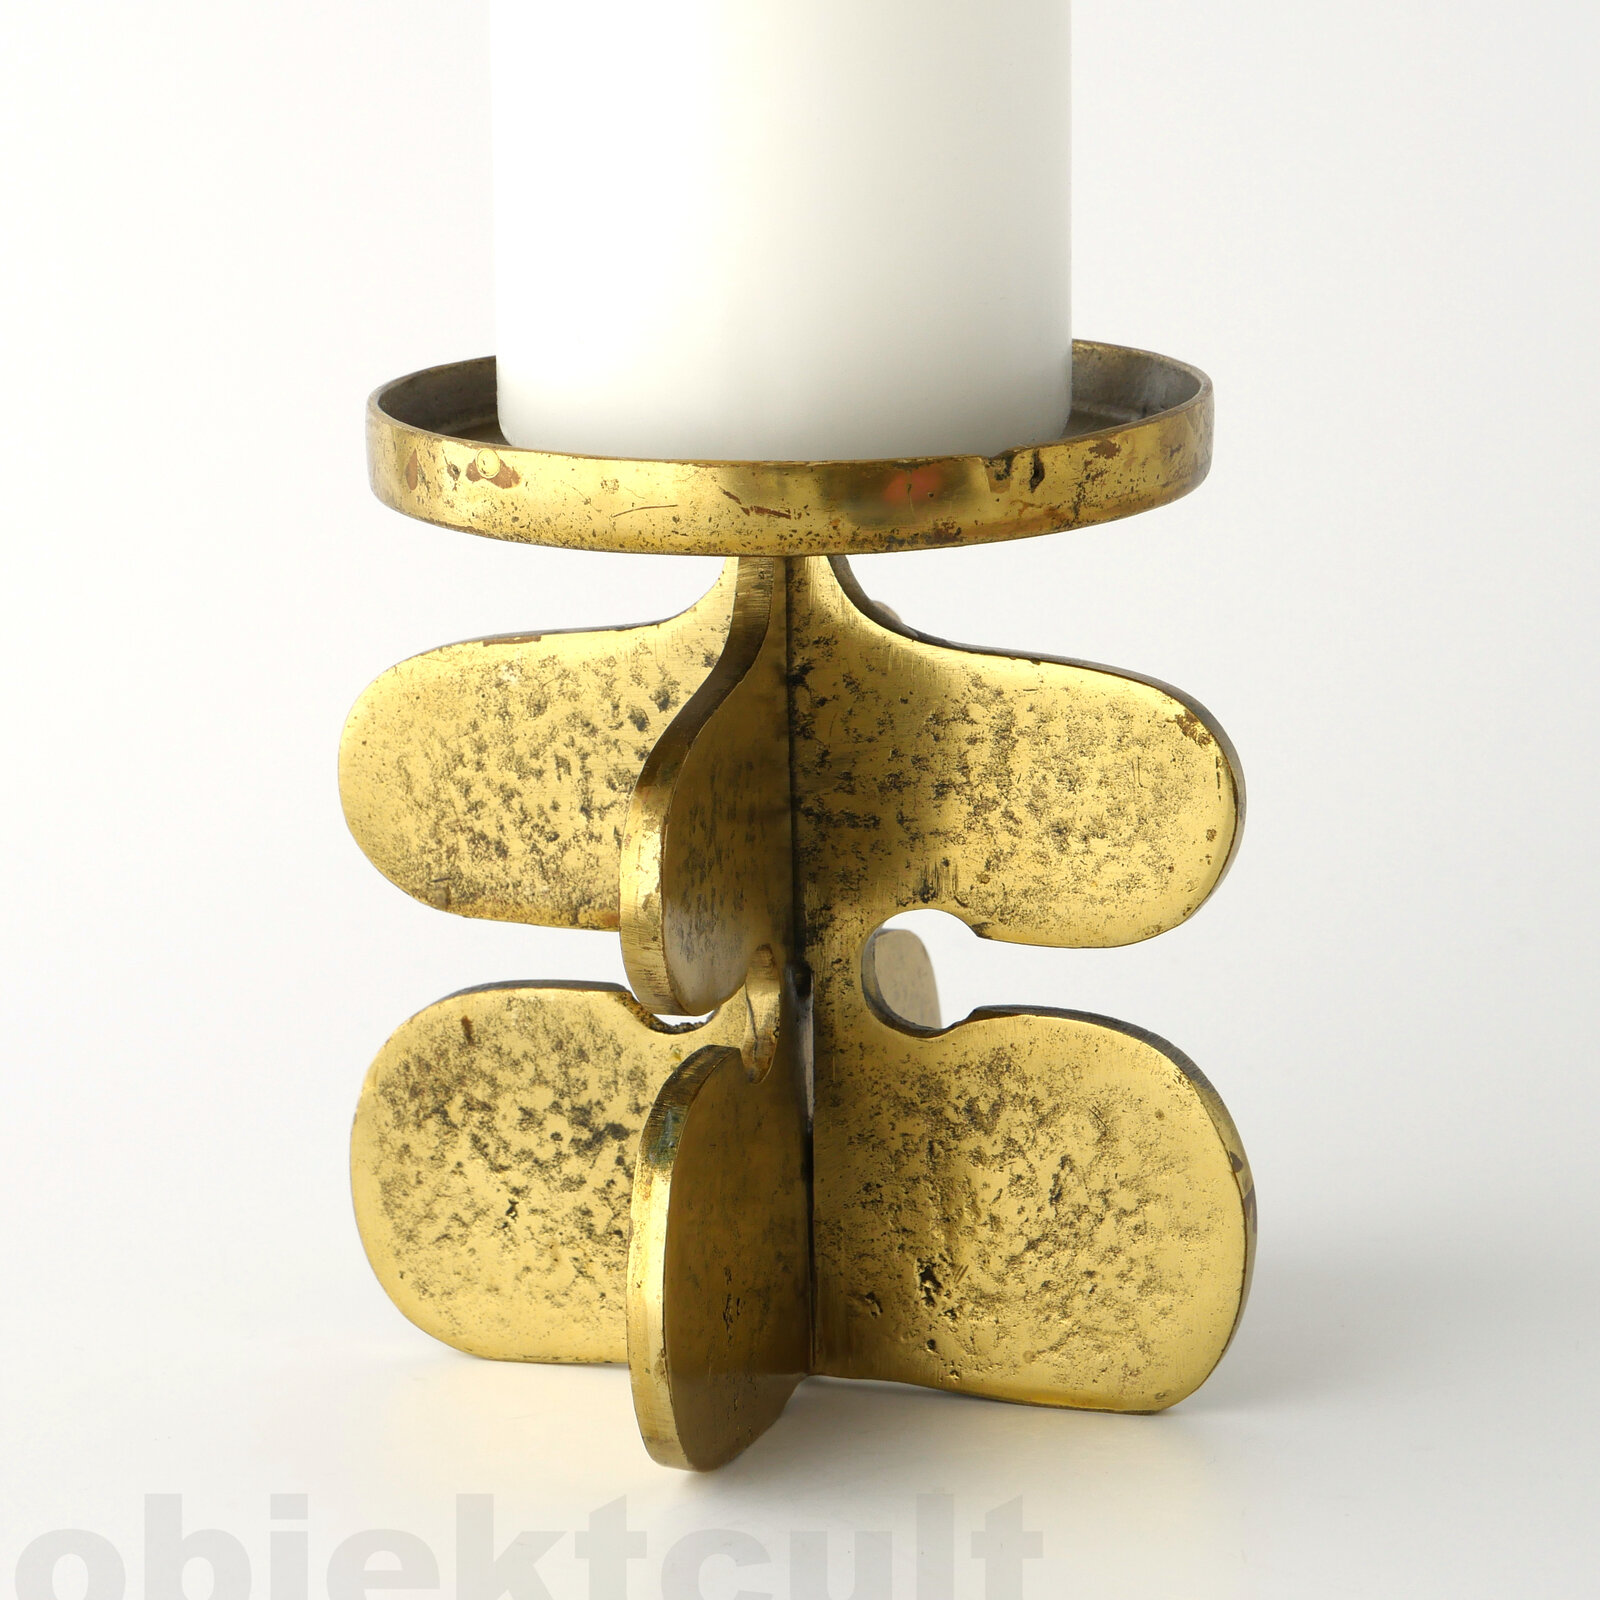 candlestick, candle stand, candleholder, Kerzenleuchter, Kerzenständer, Kerzenhalter, manufacturer: Gallo, design: Guiseppe Gallo